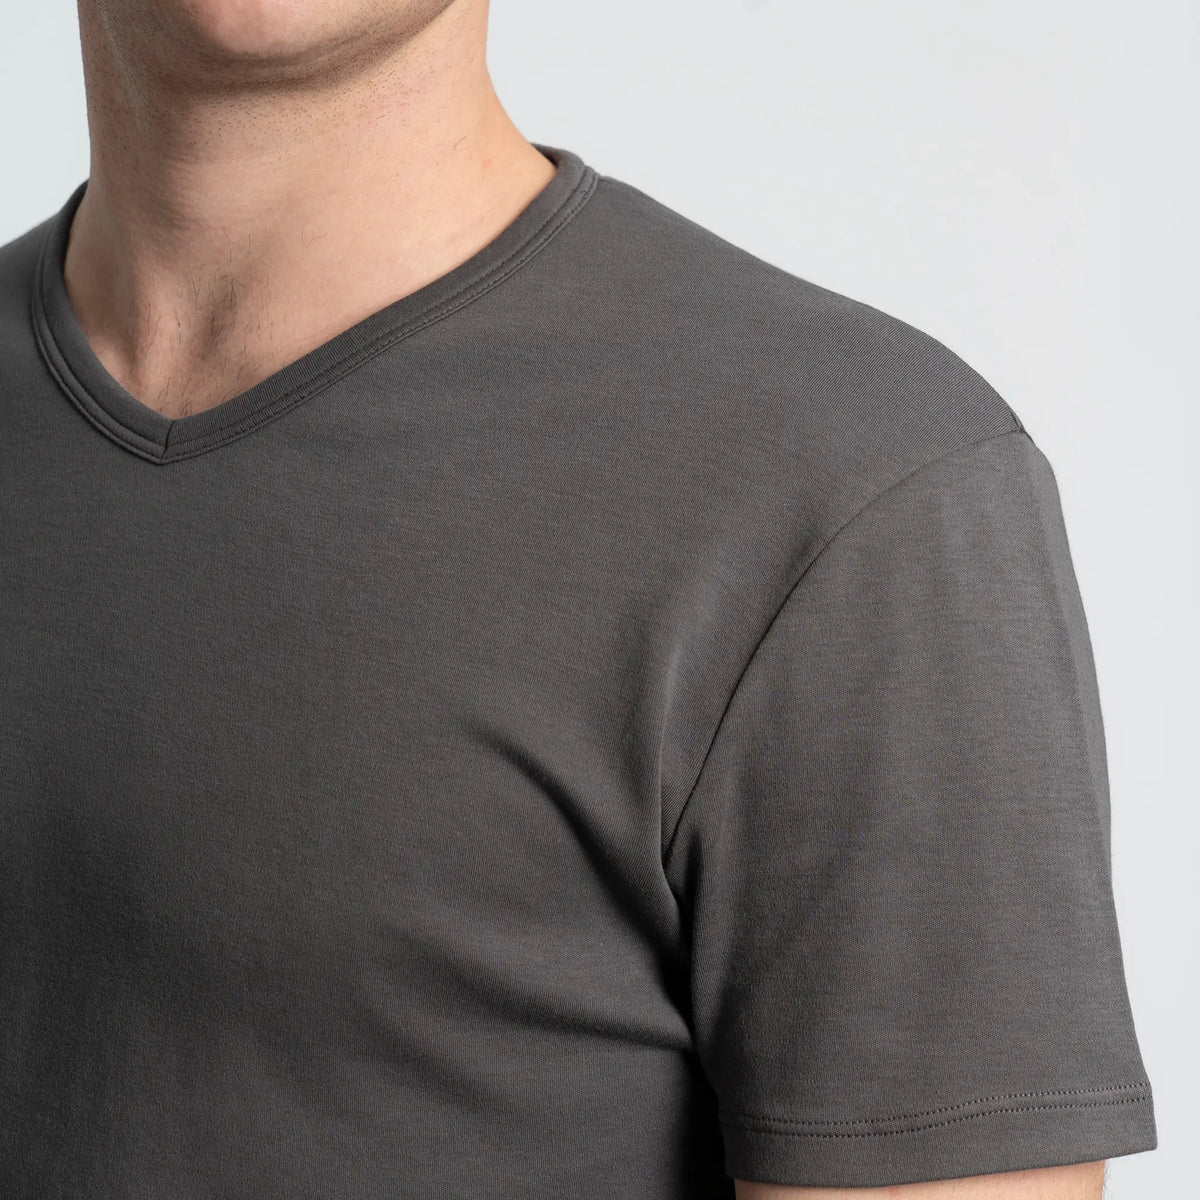 mens comfort tshirt vneck color gray